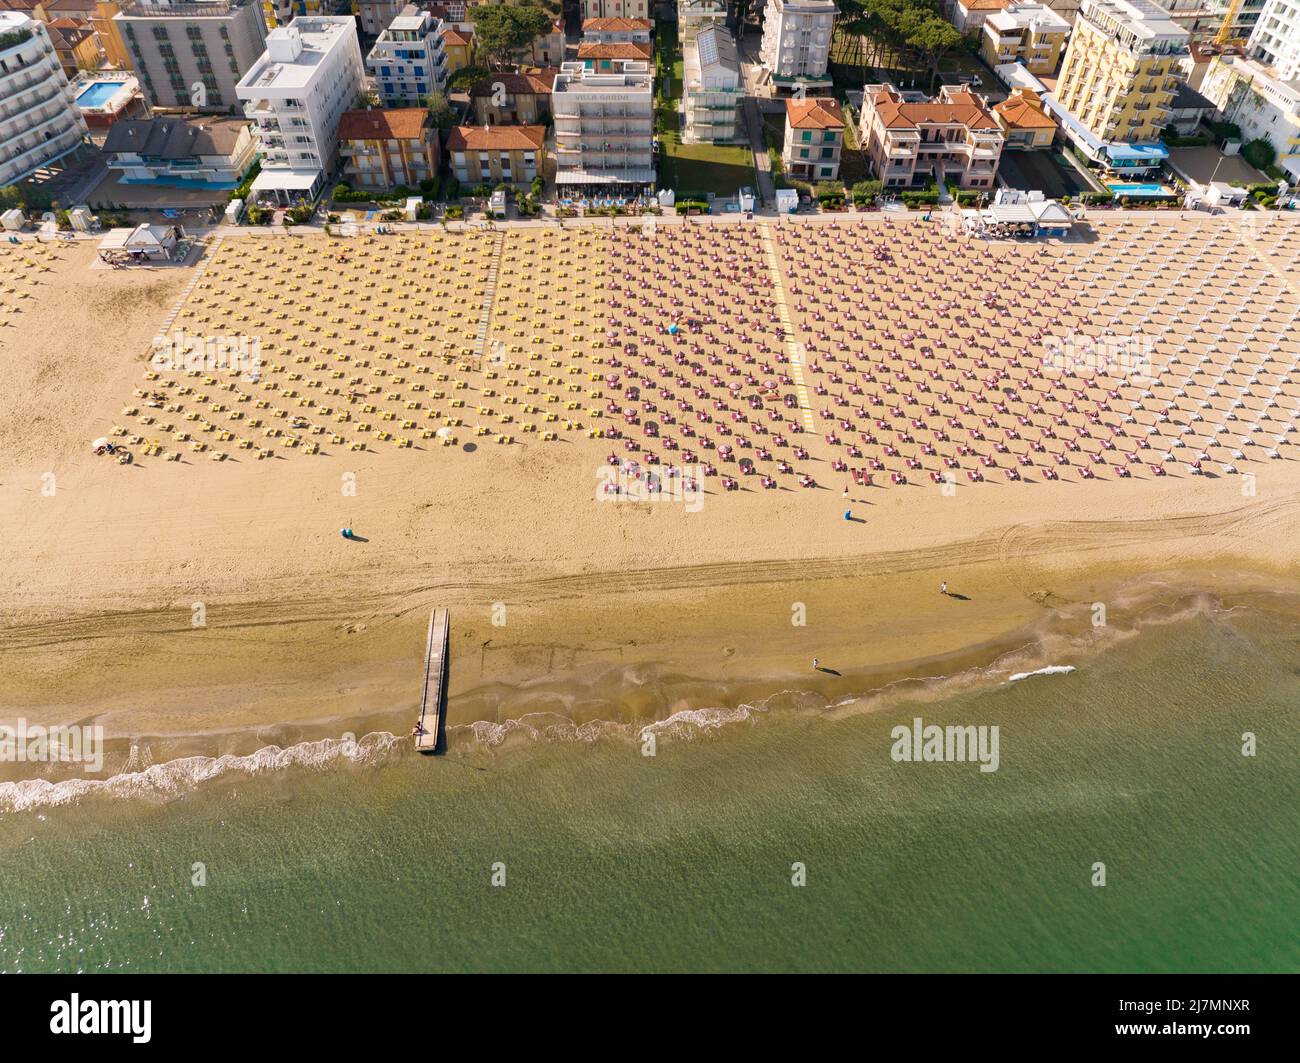 Spiaggia di Jesolo con sdraio, lettini e ombrelloni sul mare lido visto dall'alto - vacanze estive nelle città italiane Foto Stock